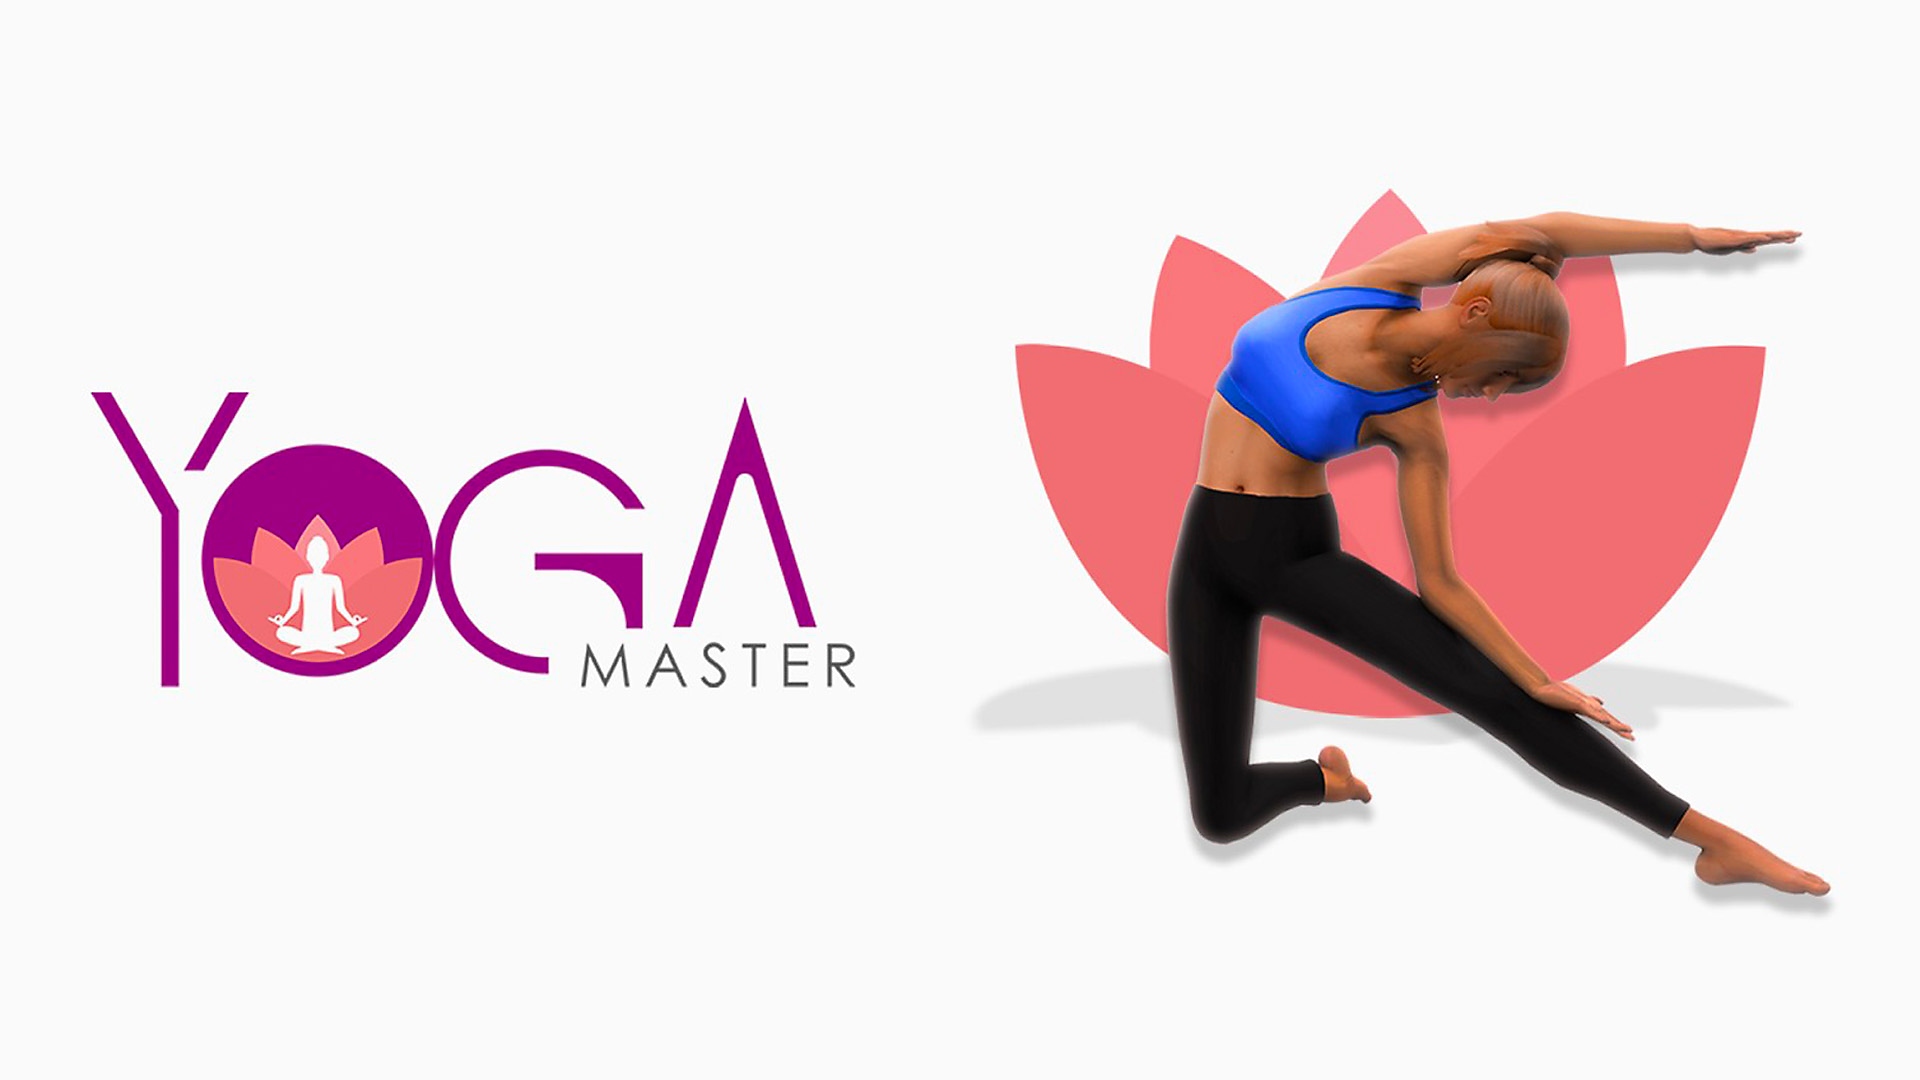 Yoga Master - Arte guía